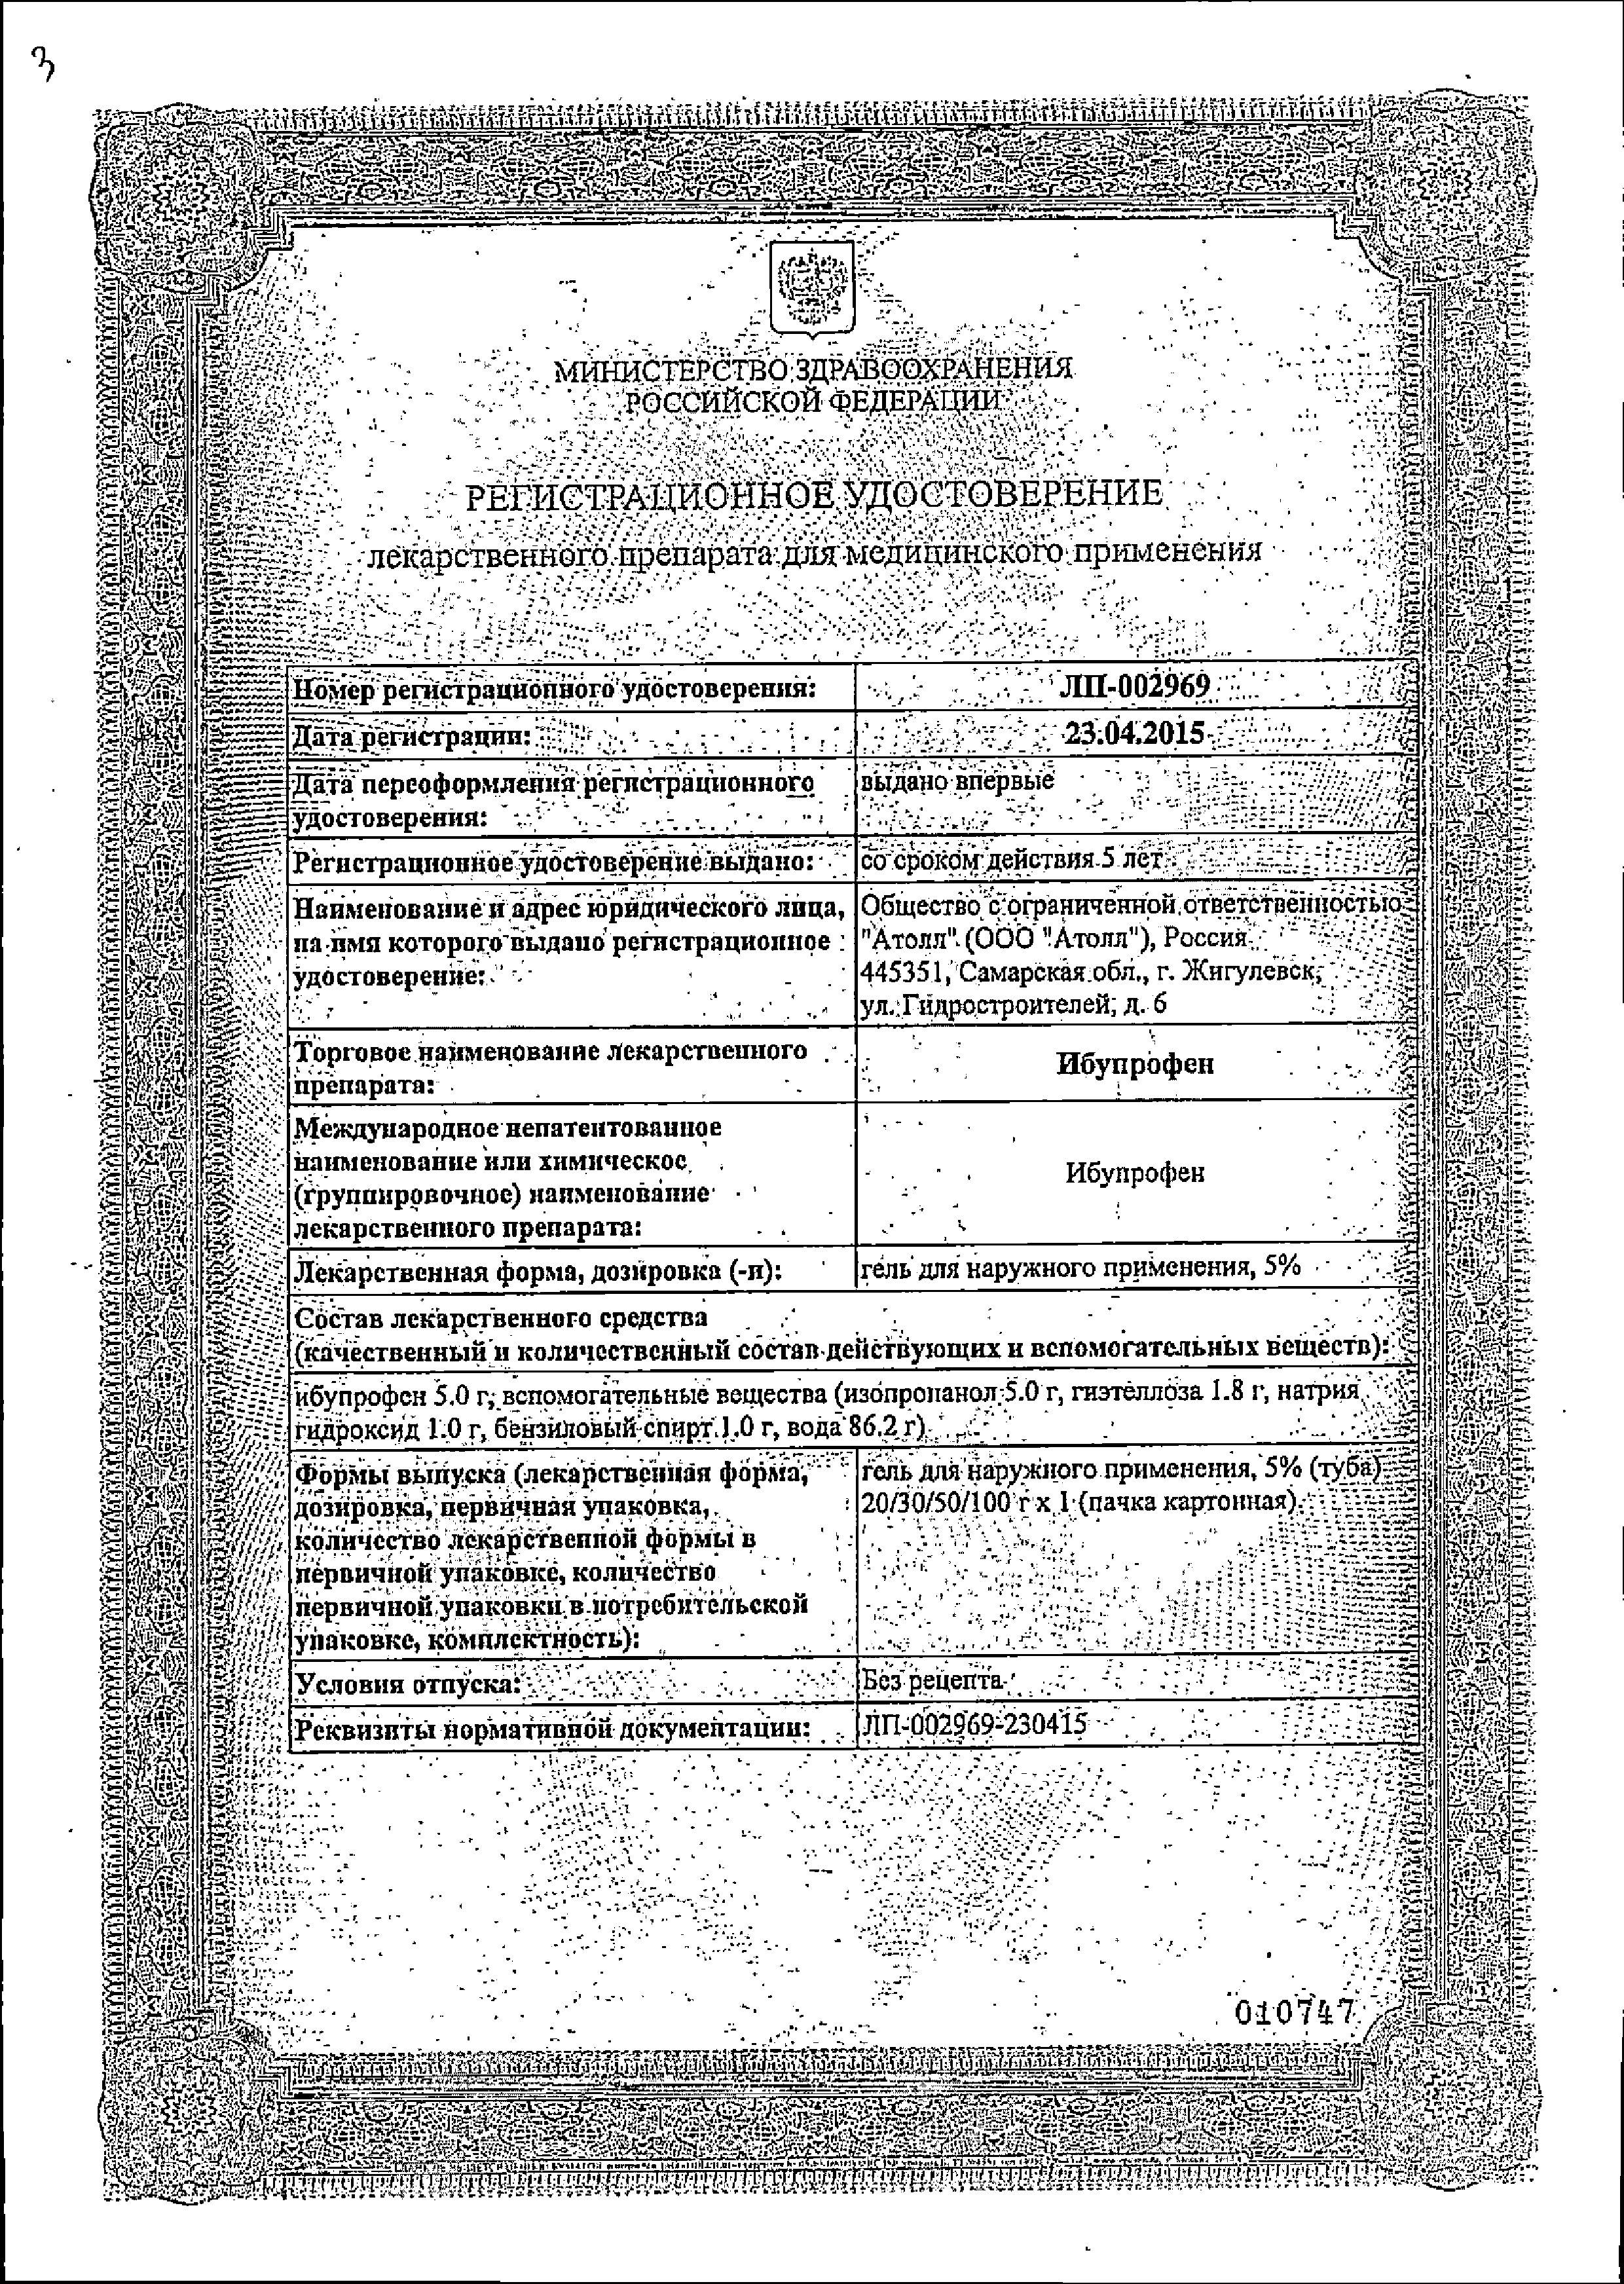 Ибупрофен (гель) сертификат